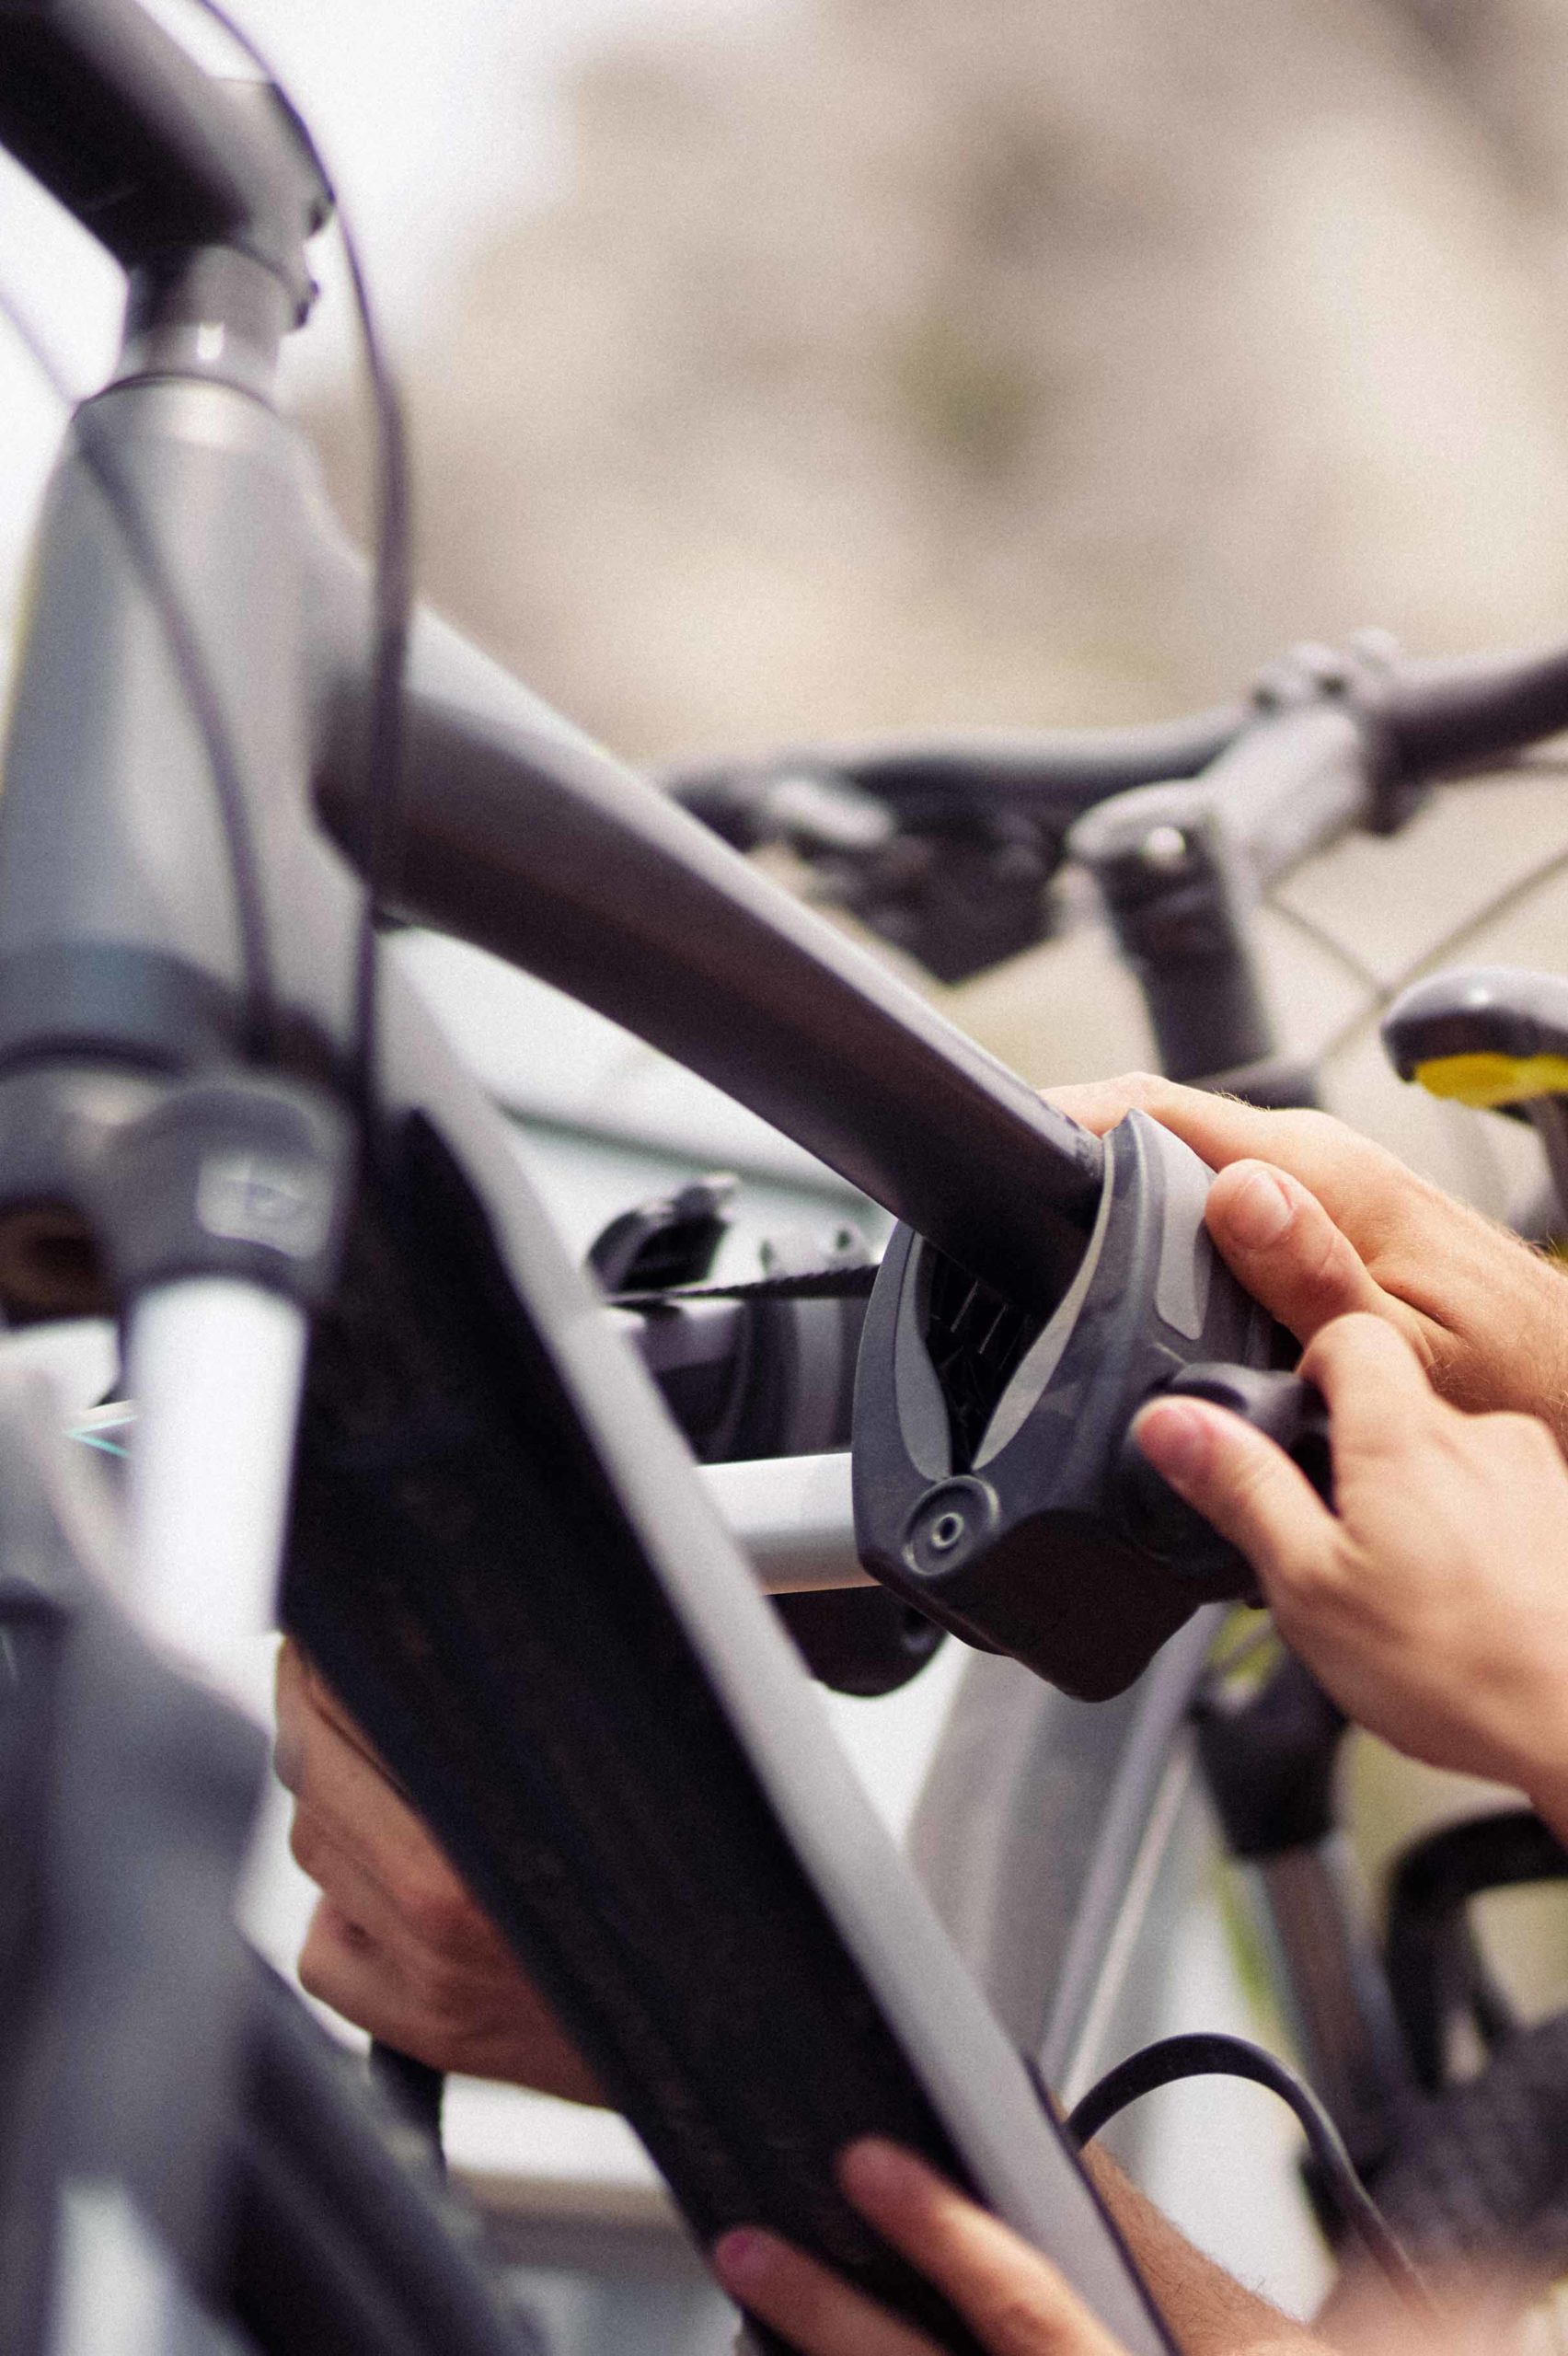 Radträger: die besten Tipps für den entspannten Bike-Urlaub